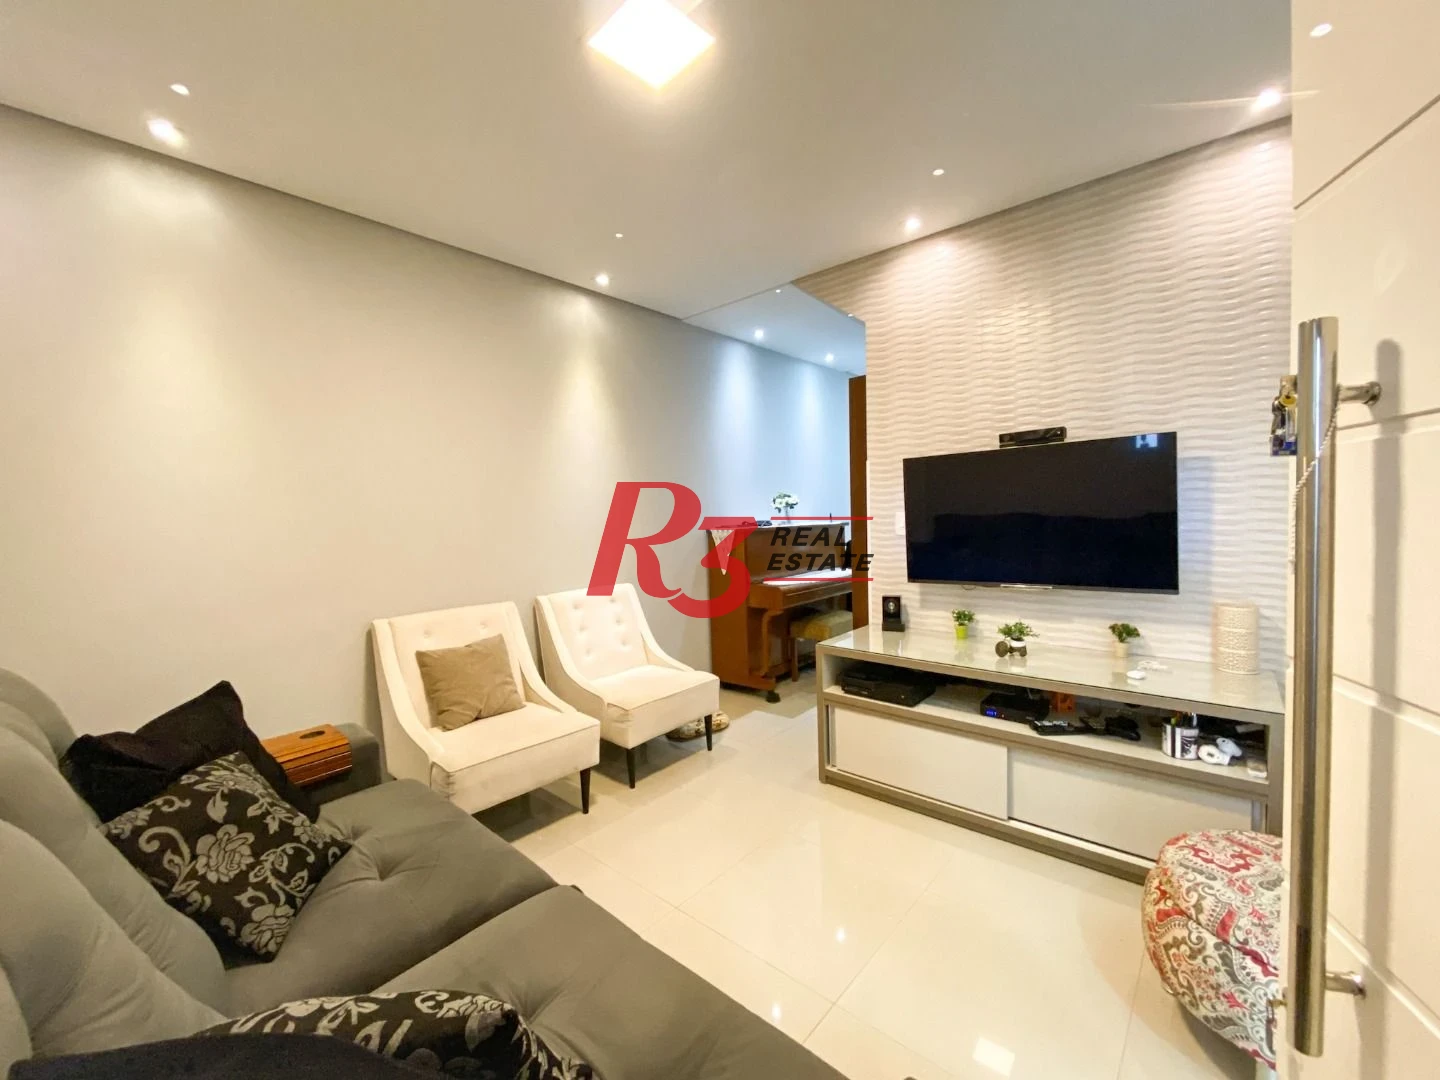 Sobrado com 3 dormitórios à venda, 130 m² por R$ 980.000 no José Menino - Santos/SP